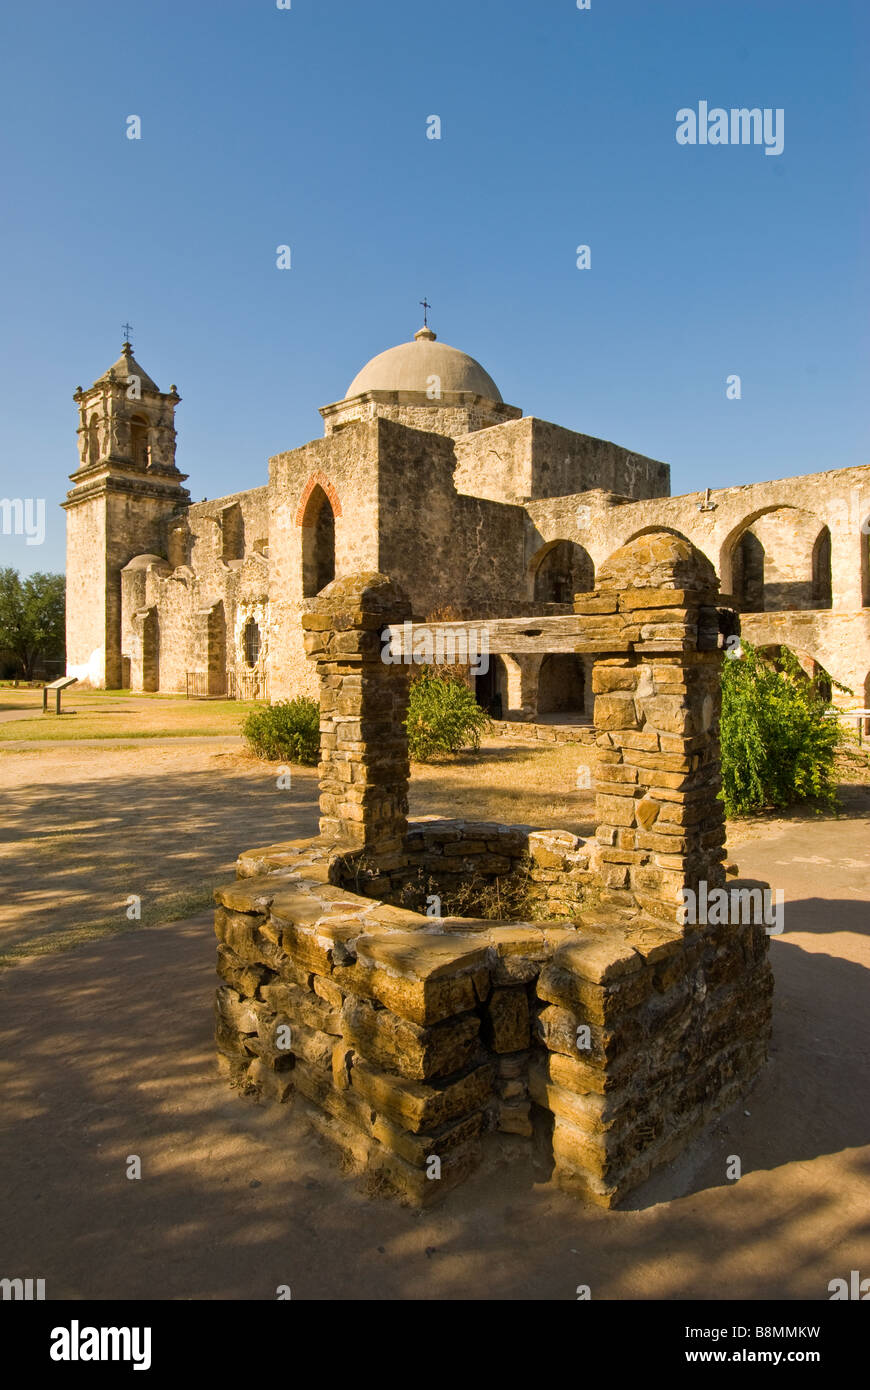 La missione di San José San Antonio Tx attrazione turistica dello stato nazionale landmark architettura coloniale spagnola edificio Foto Stock